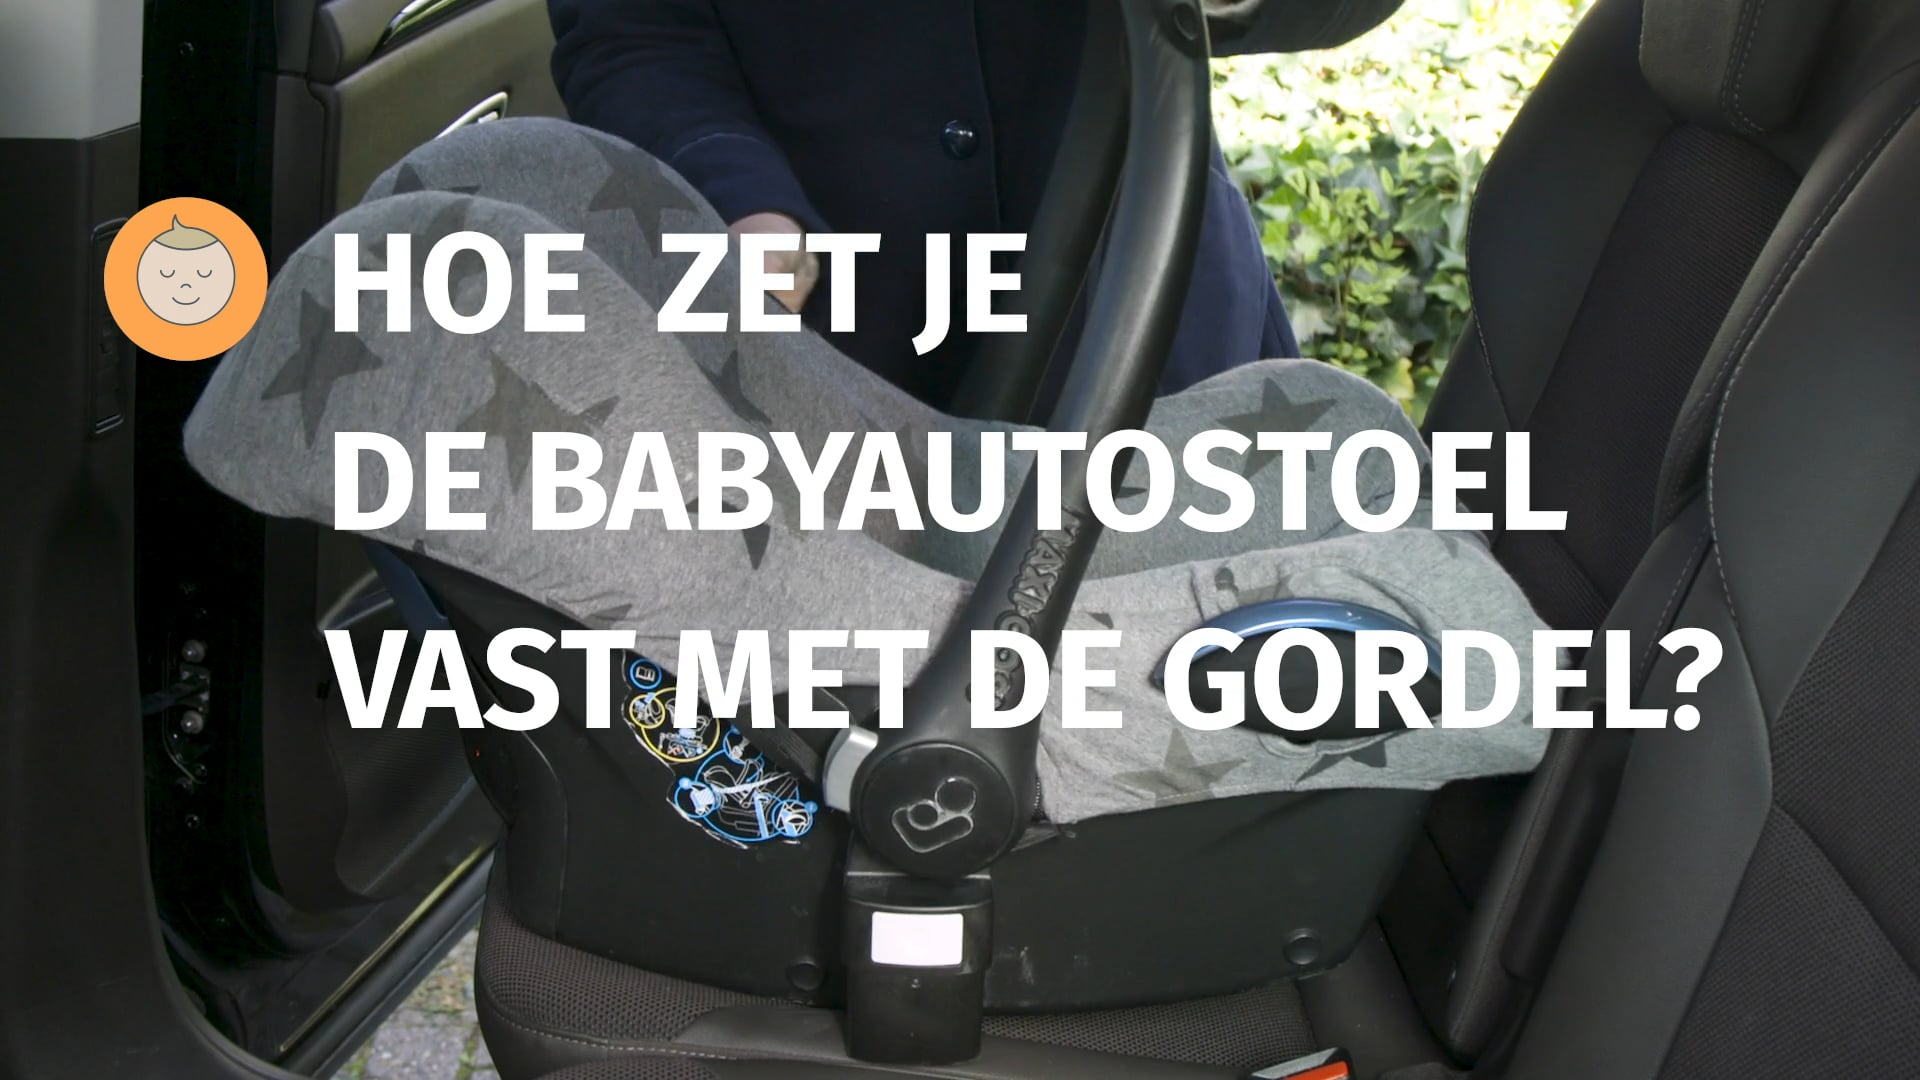 evenwicht Vervallen venster VeiligheidNL - Baby autostoel vastzetten met de gordel on Vimeo